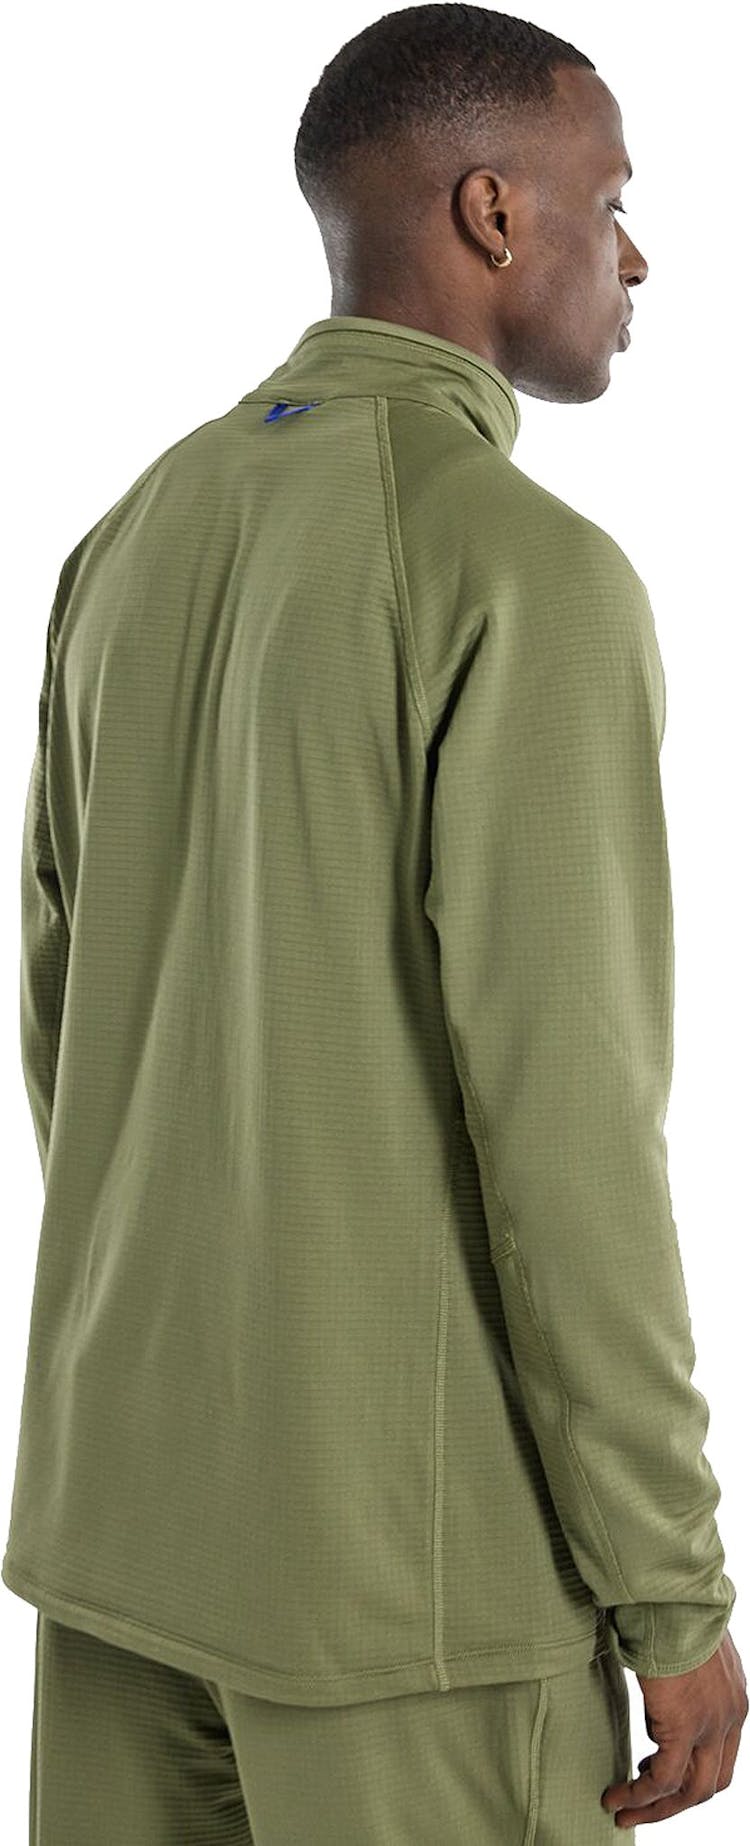 Product gallery image number 4 for product Stockrun Grid Half-Zip Fleece Sweatshirt - Men's